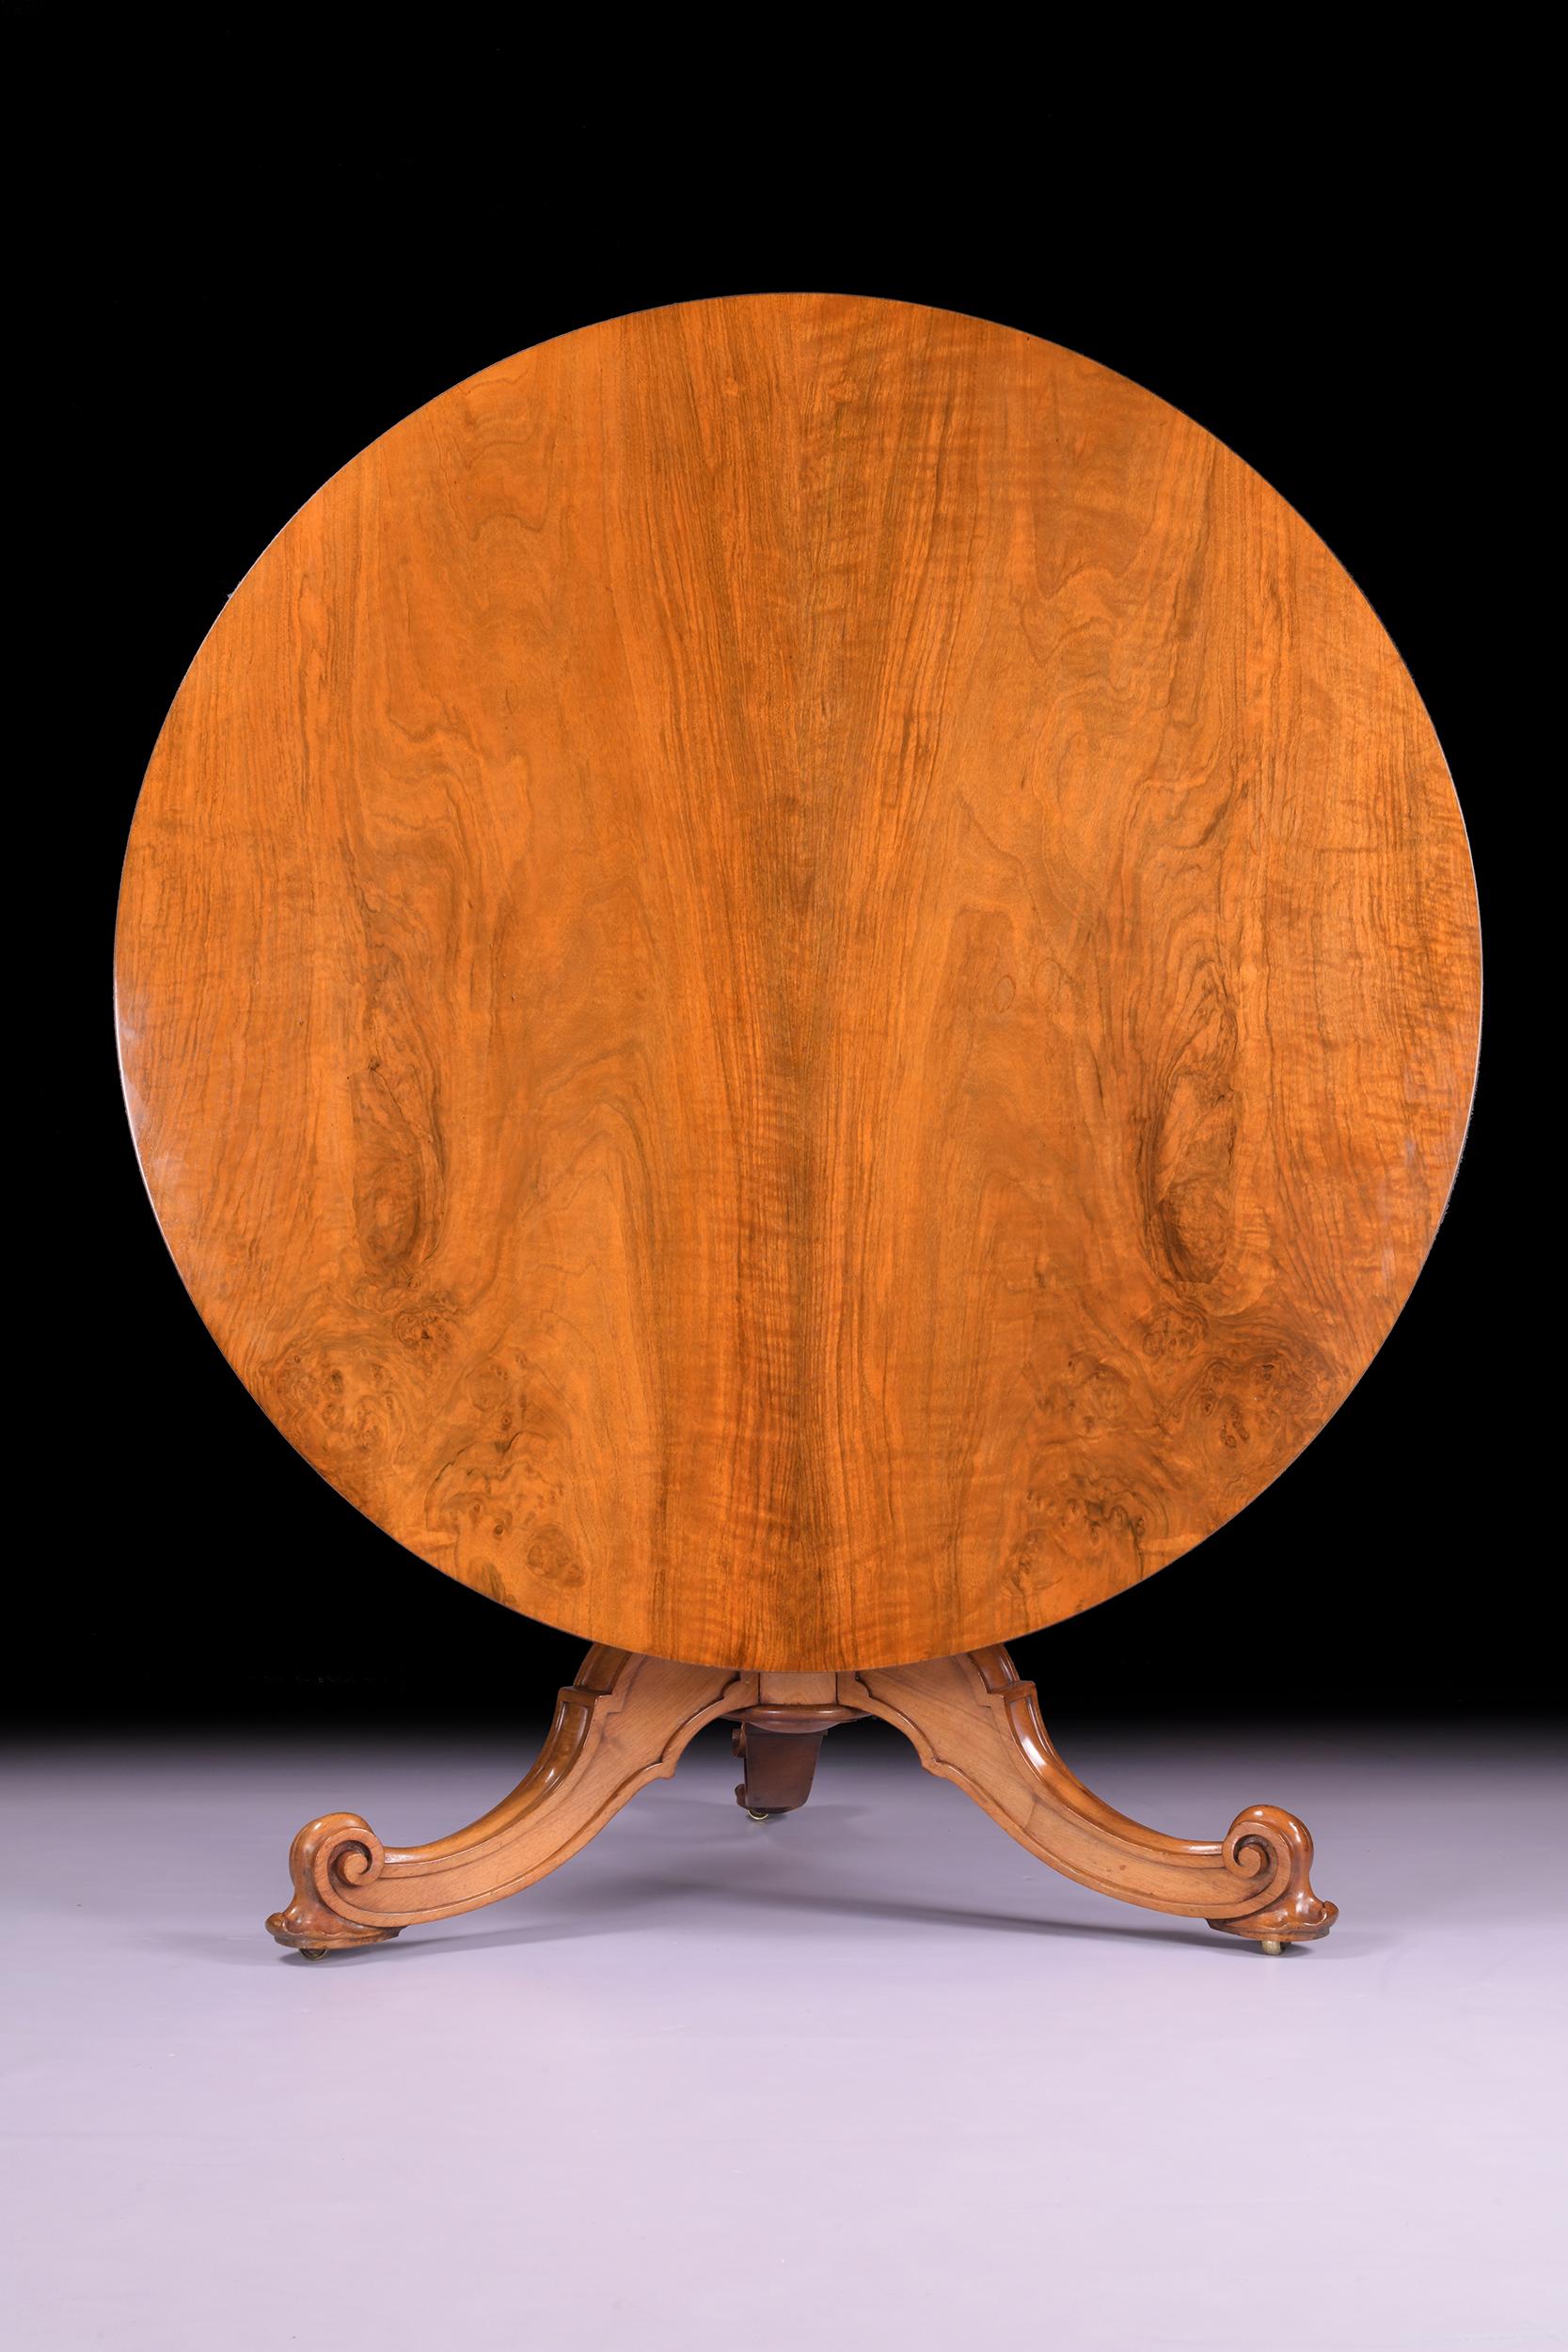 Une très belle table centrale en bois de satin du 19ème siècle par Holland & Sons. La table est en bois de satin finement figuré avec un plateau circulaire basculant au-dessus d'une colonne balustre avec trois pieds sculptés en S et en feuilles,